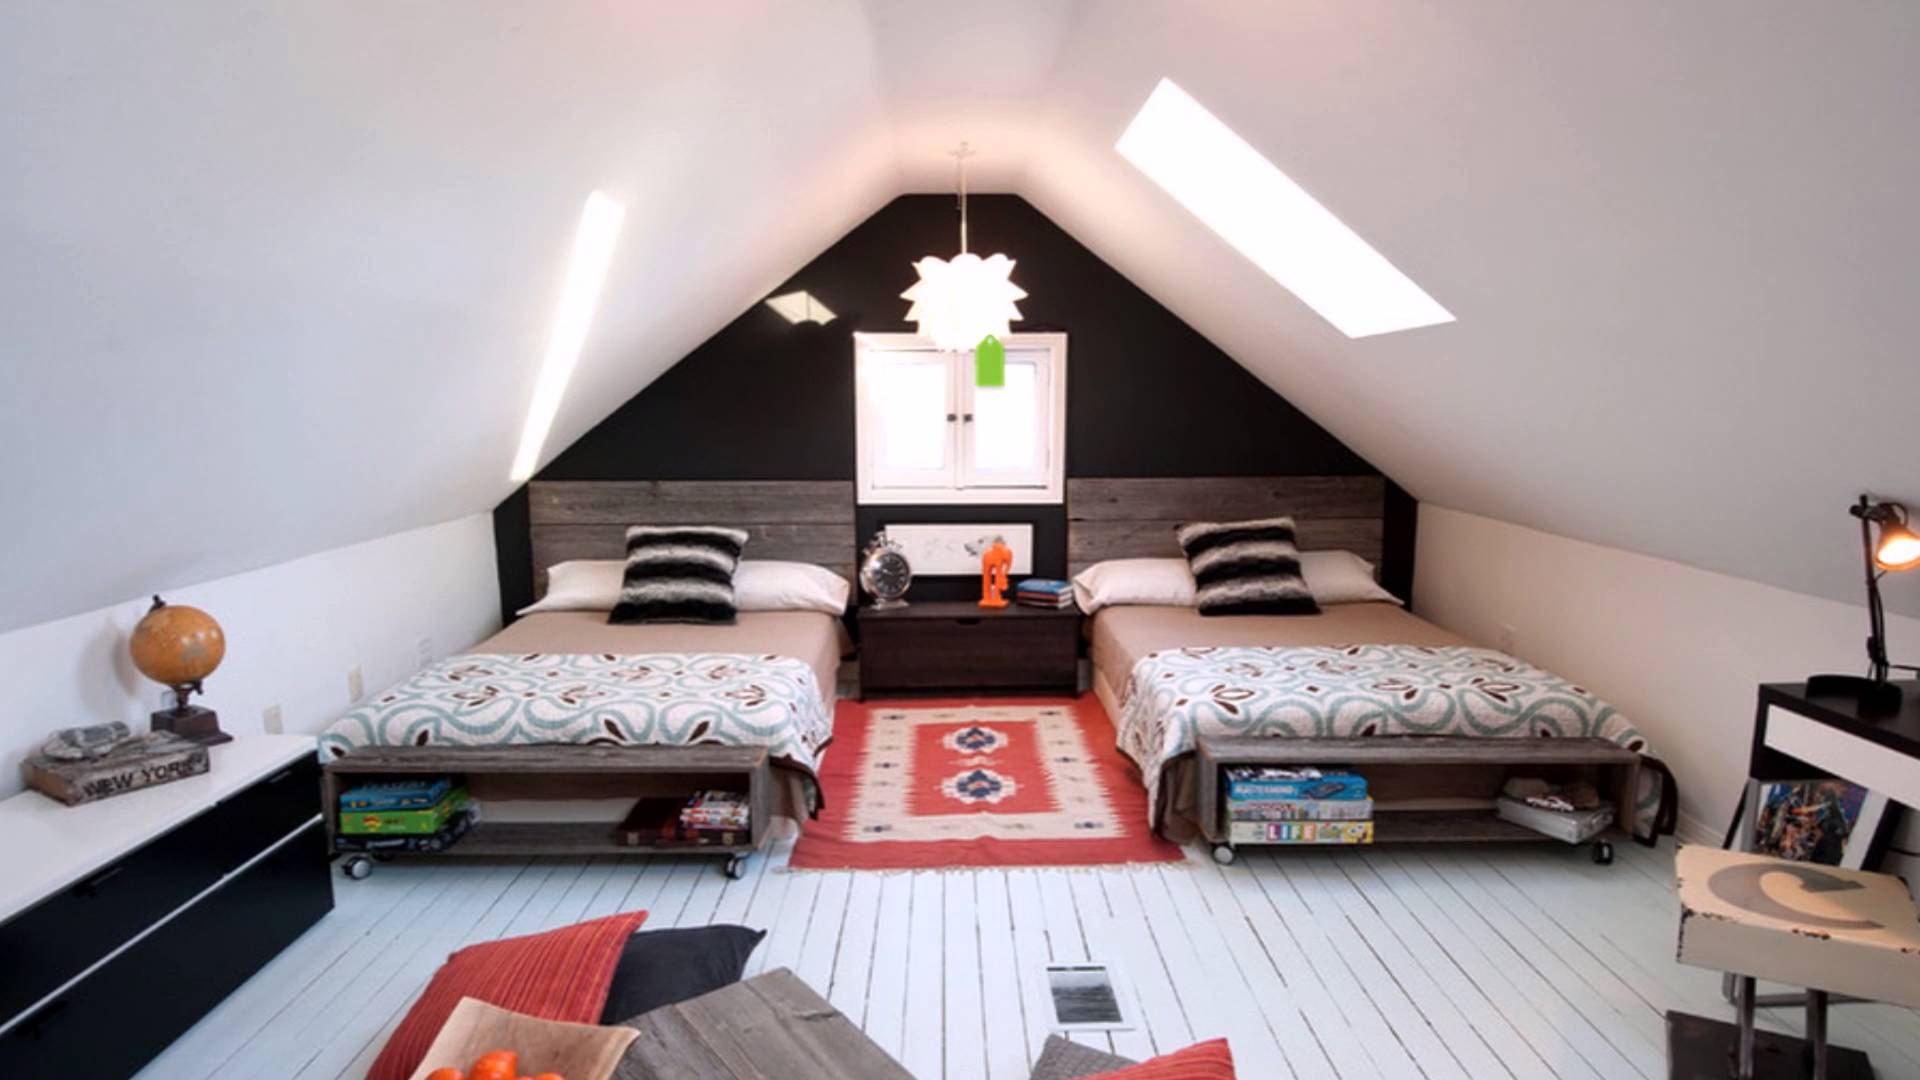 Dormitor alb-negru la mansarda cu doua paturi singhe si pardoseala din scanduri albe din lemn